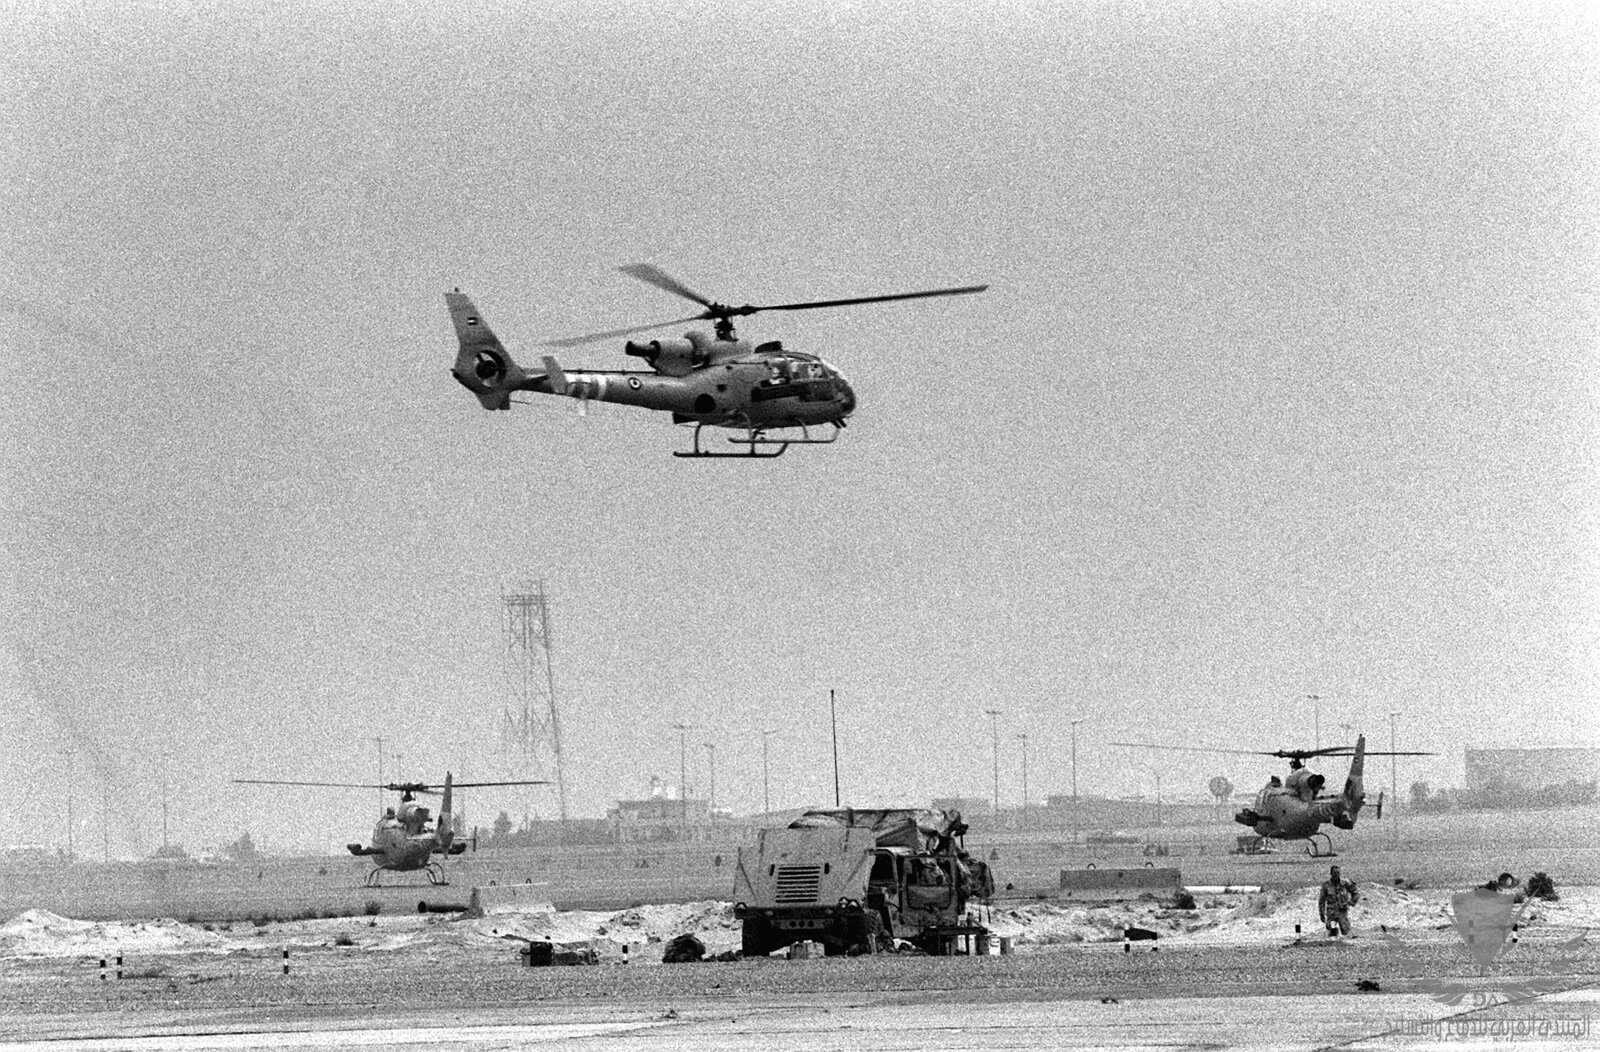 a-kuwaiti-sa-342m-gazelle-helicopter-arrives-at-a-desert-landing-zone-following-9d8e5a-1600.jpg